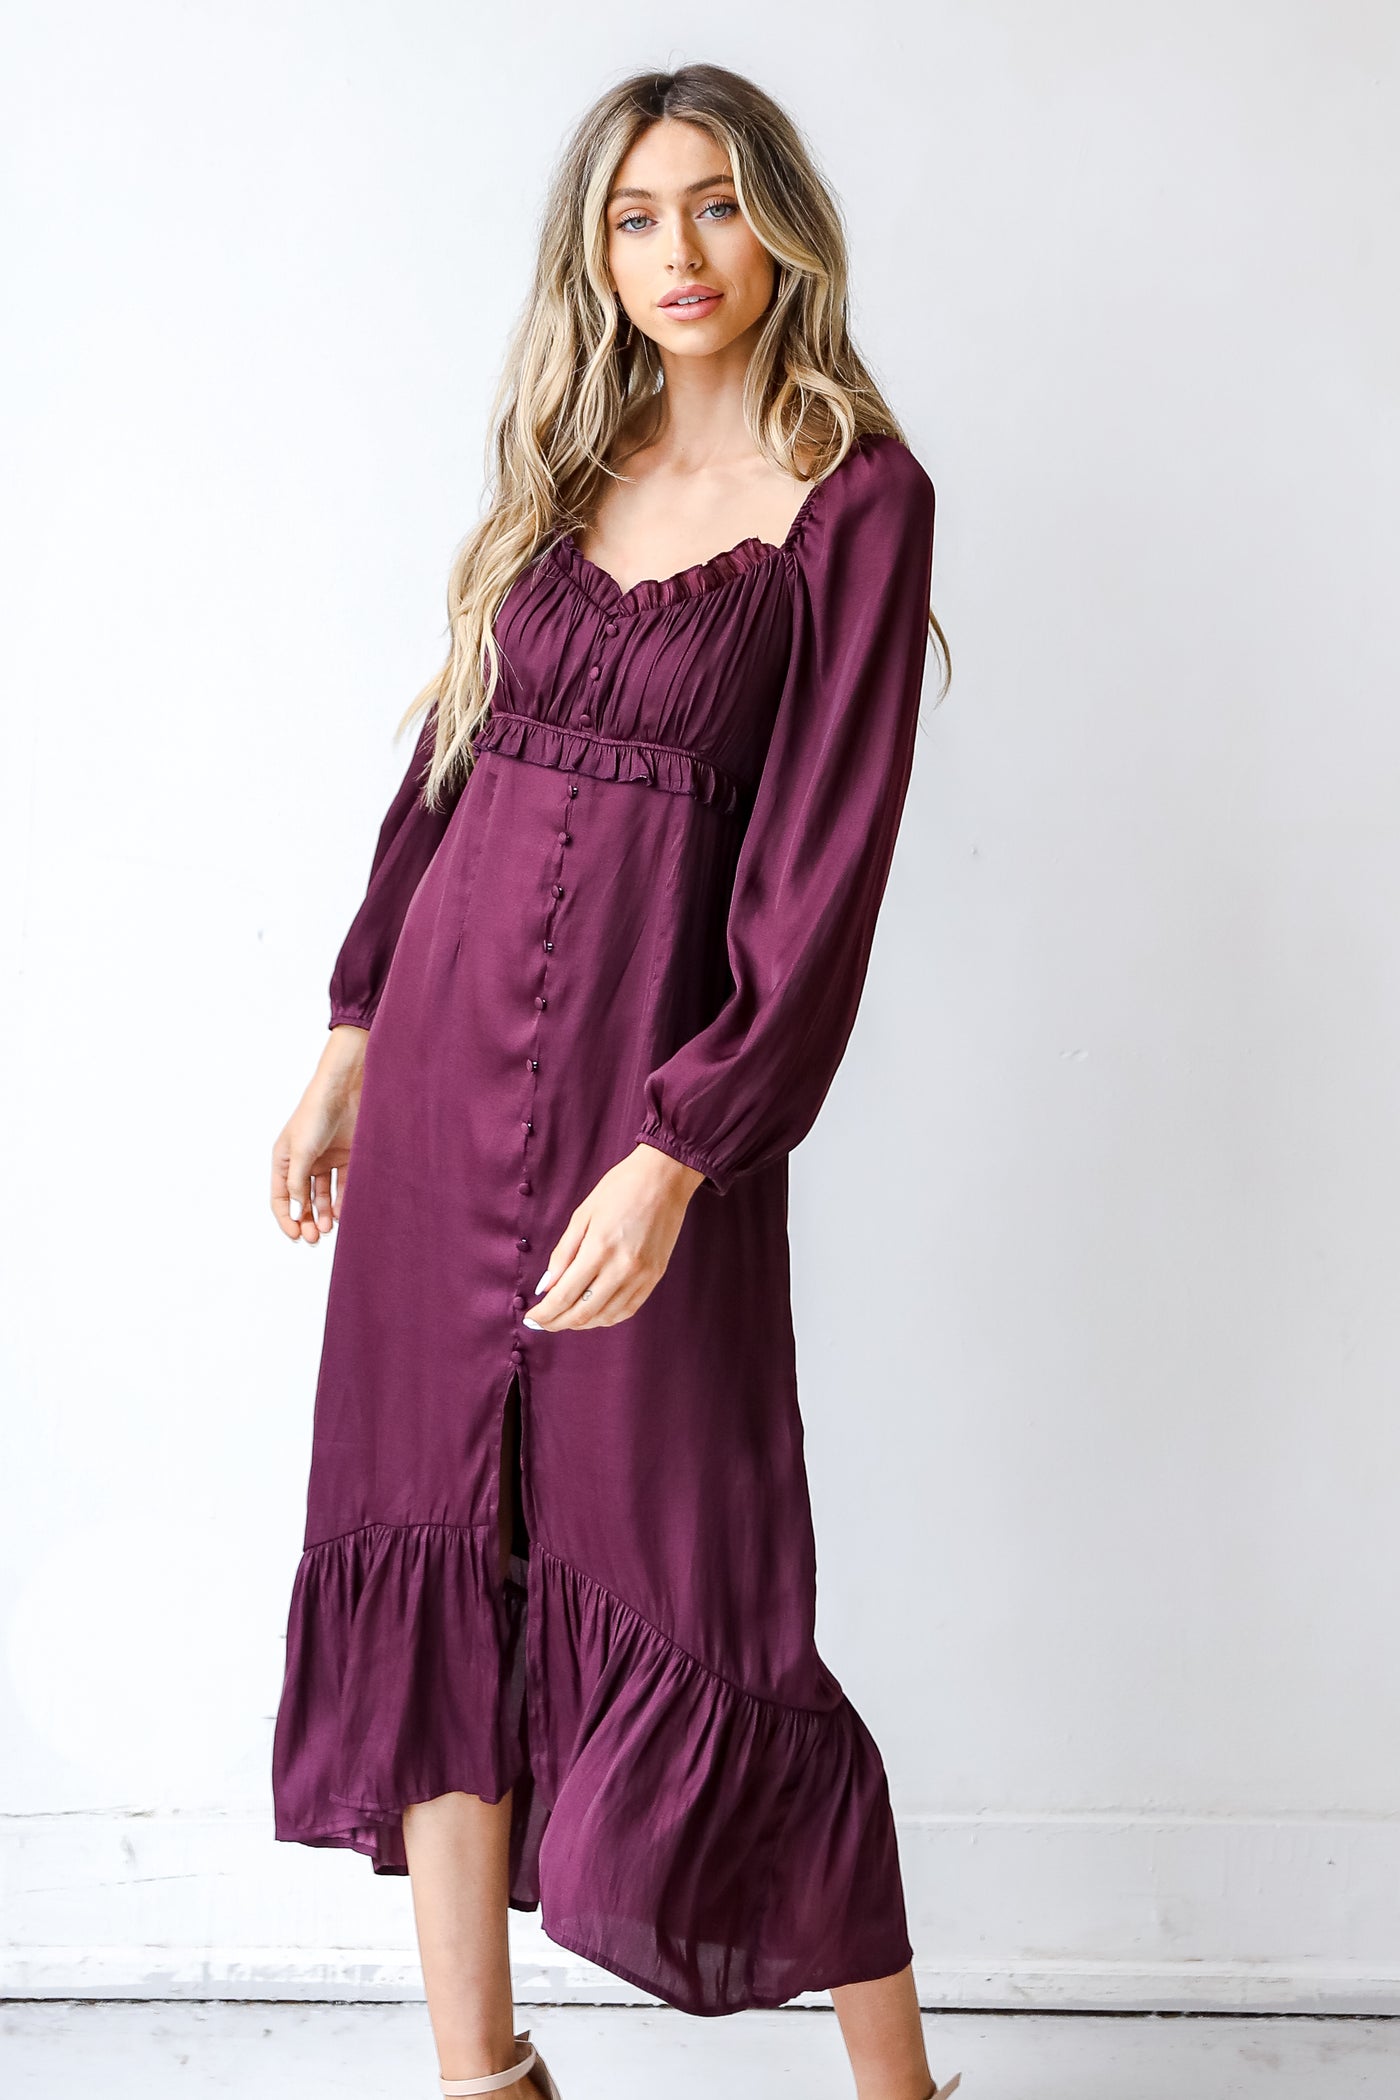 Midi Dress in burgundy on model